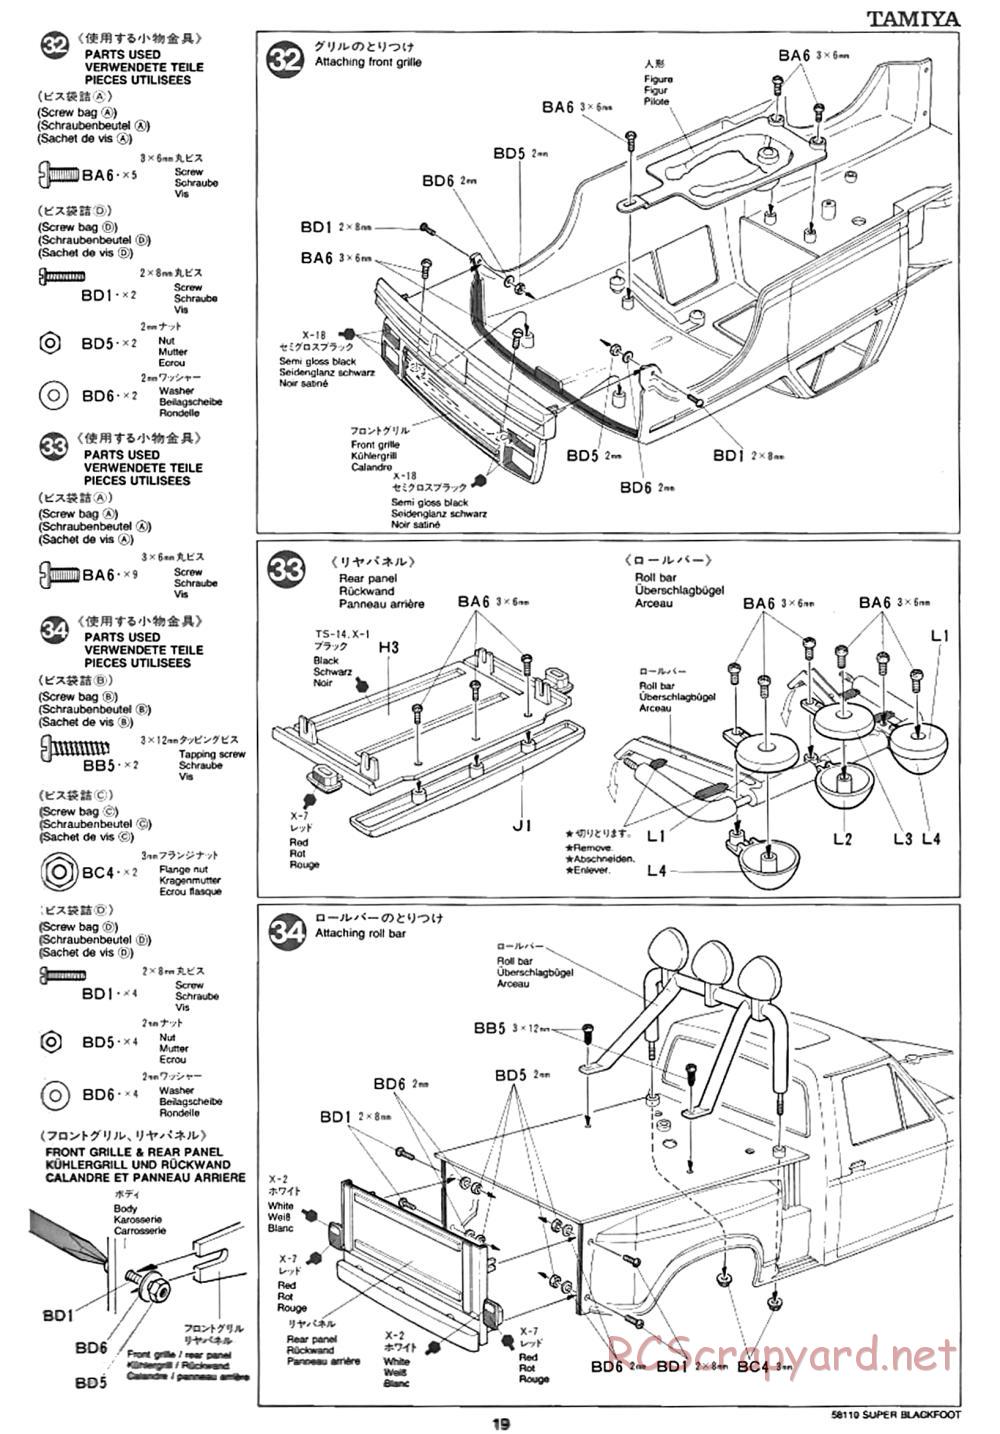 Tamiya - Super Blackfoot Chassis - Manual - Page 19